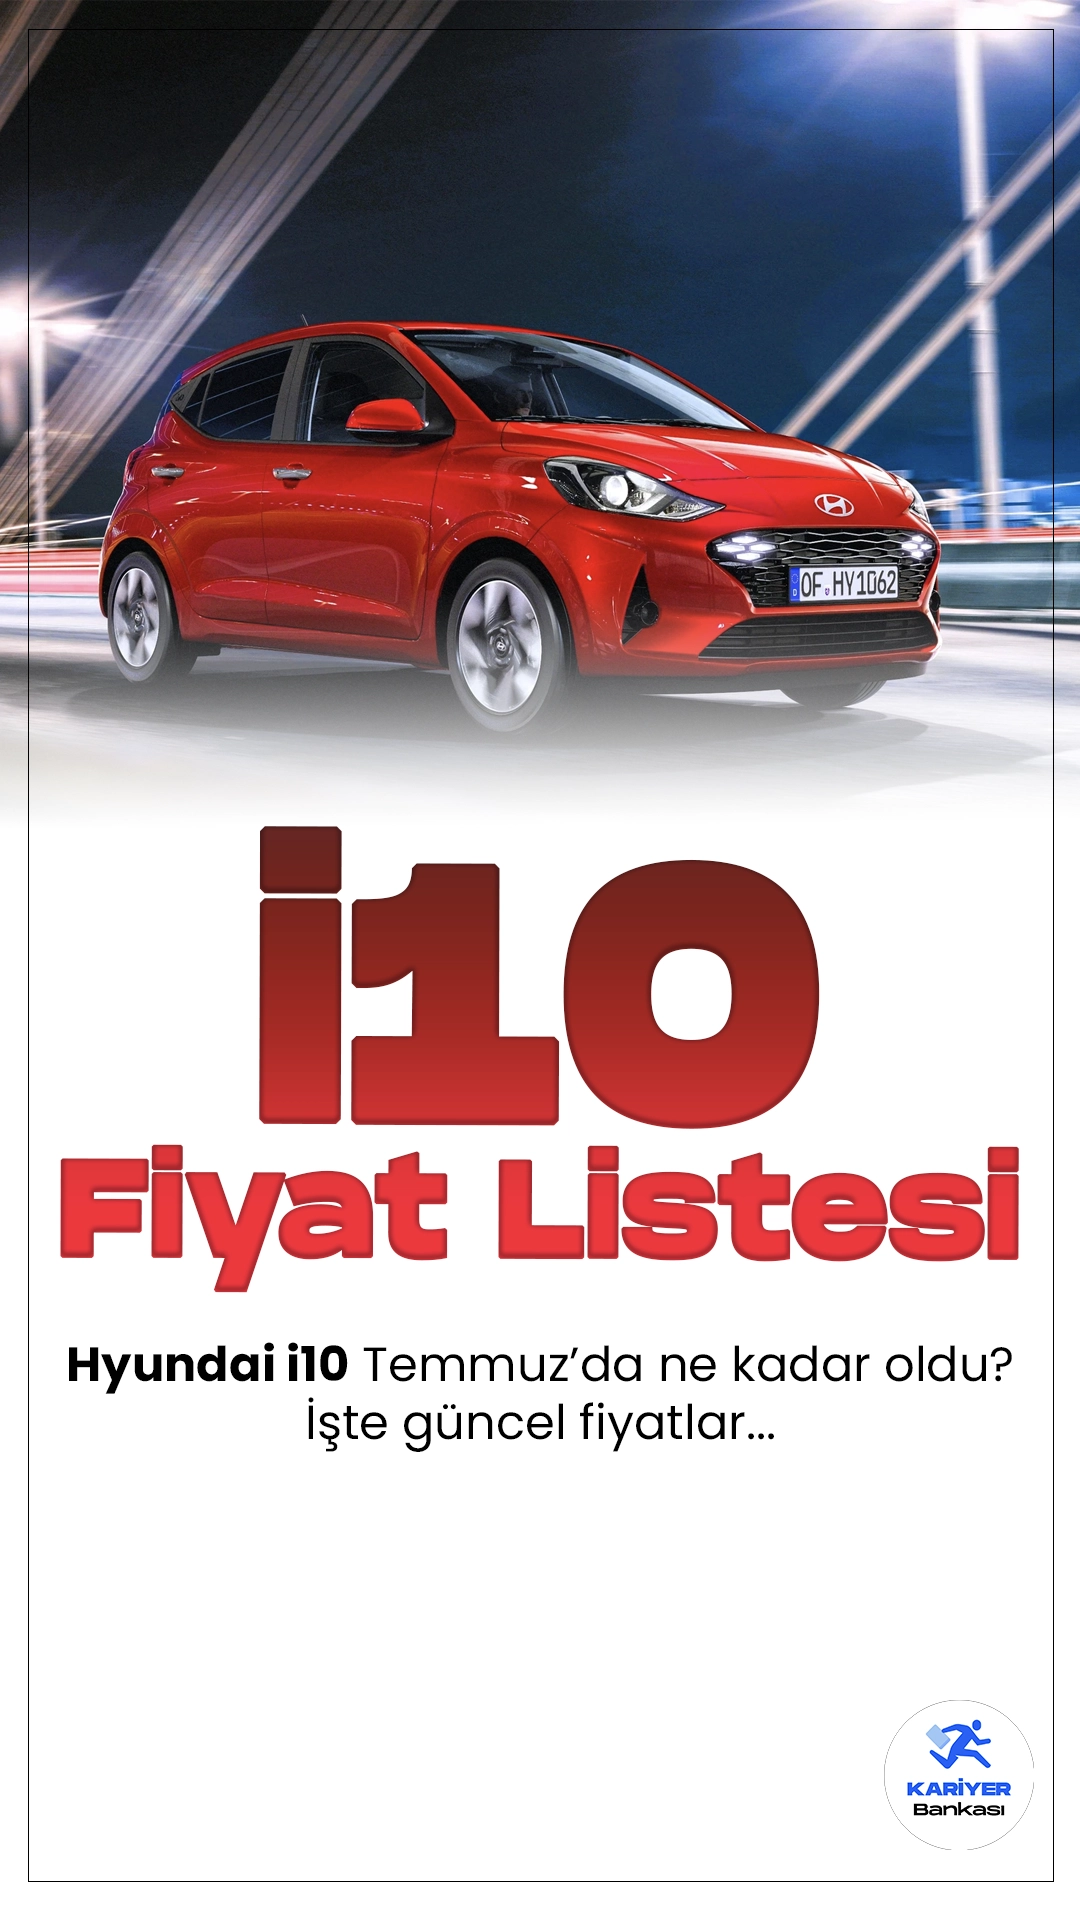 Hyundai i10 Temmuz 2024 Fiyat Listesi Yayımlandı.Hyundai'nin popüler şehir otomobili i10, kompakt boyutları ve pratik özellikleriyle dikkat çekiyor. Yenilenen tasarımıyla estetik ve işlevselliği bir arada sunan i10, özellikle şehir içi kullanımda büyük avantaj sağlıyor. Ekonomik yakıt tüketimiyle bütçe dostu olan araç, aynı zamanda çevreye duyarlılığıyla da öne çıkıyor.